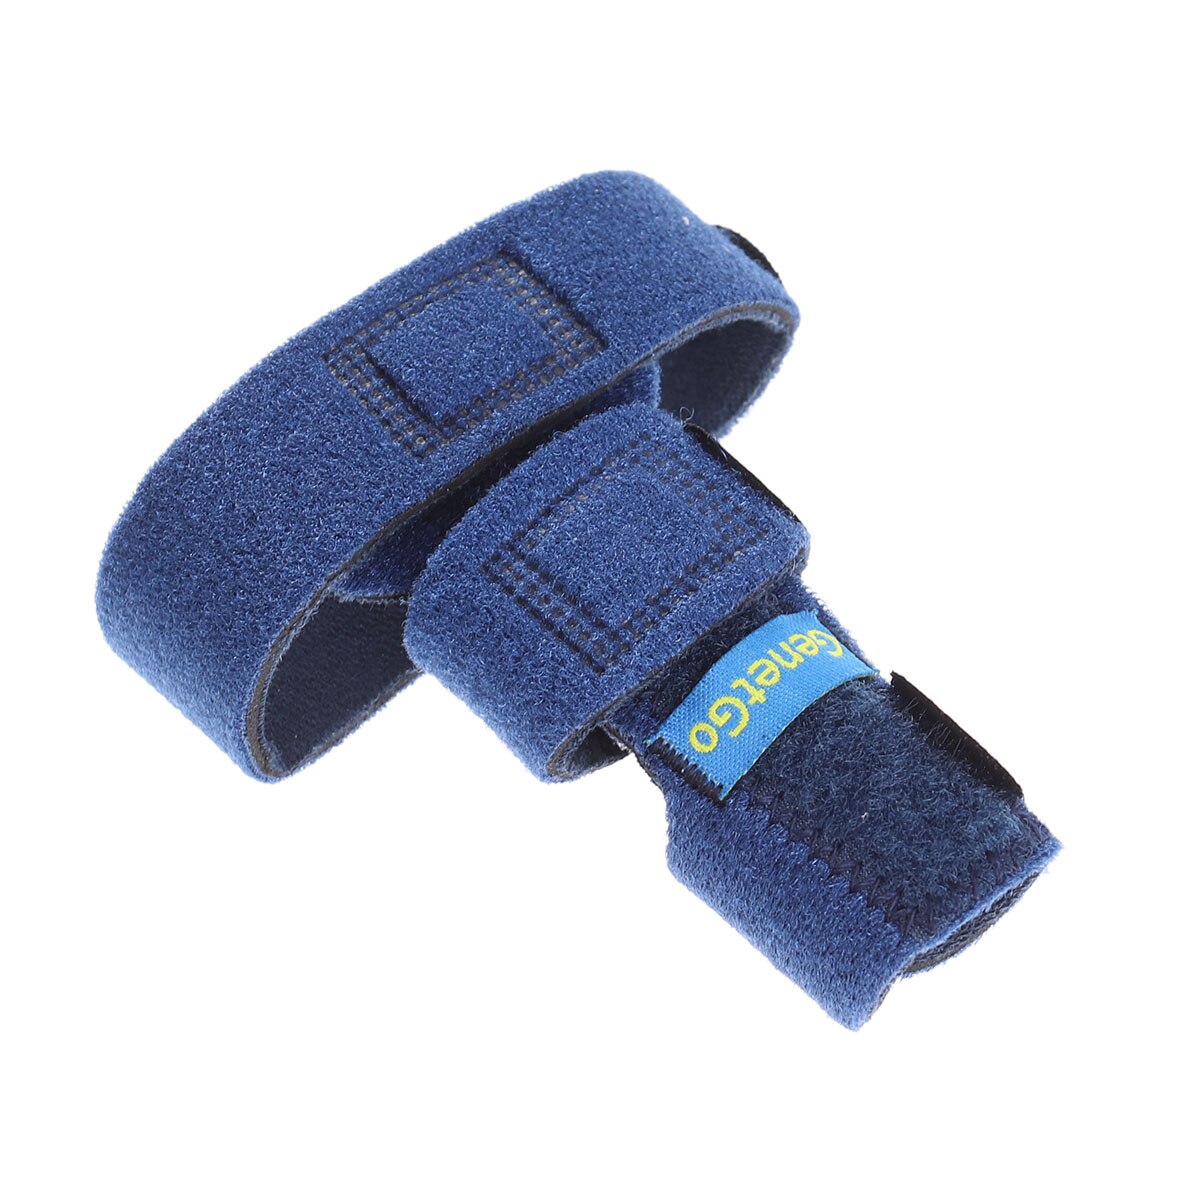 Udløserfinger forlængelse skinne justerbar fastgørelsesbælte håndstøtte (blå)